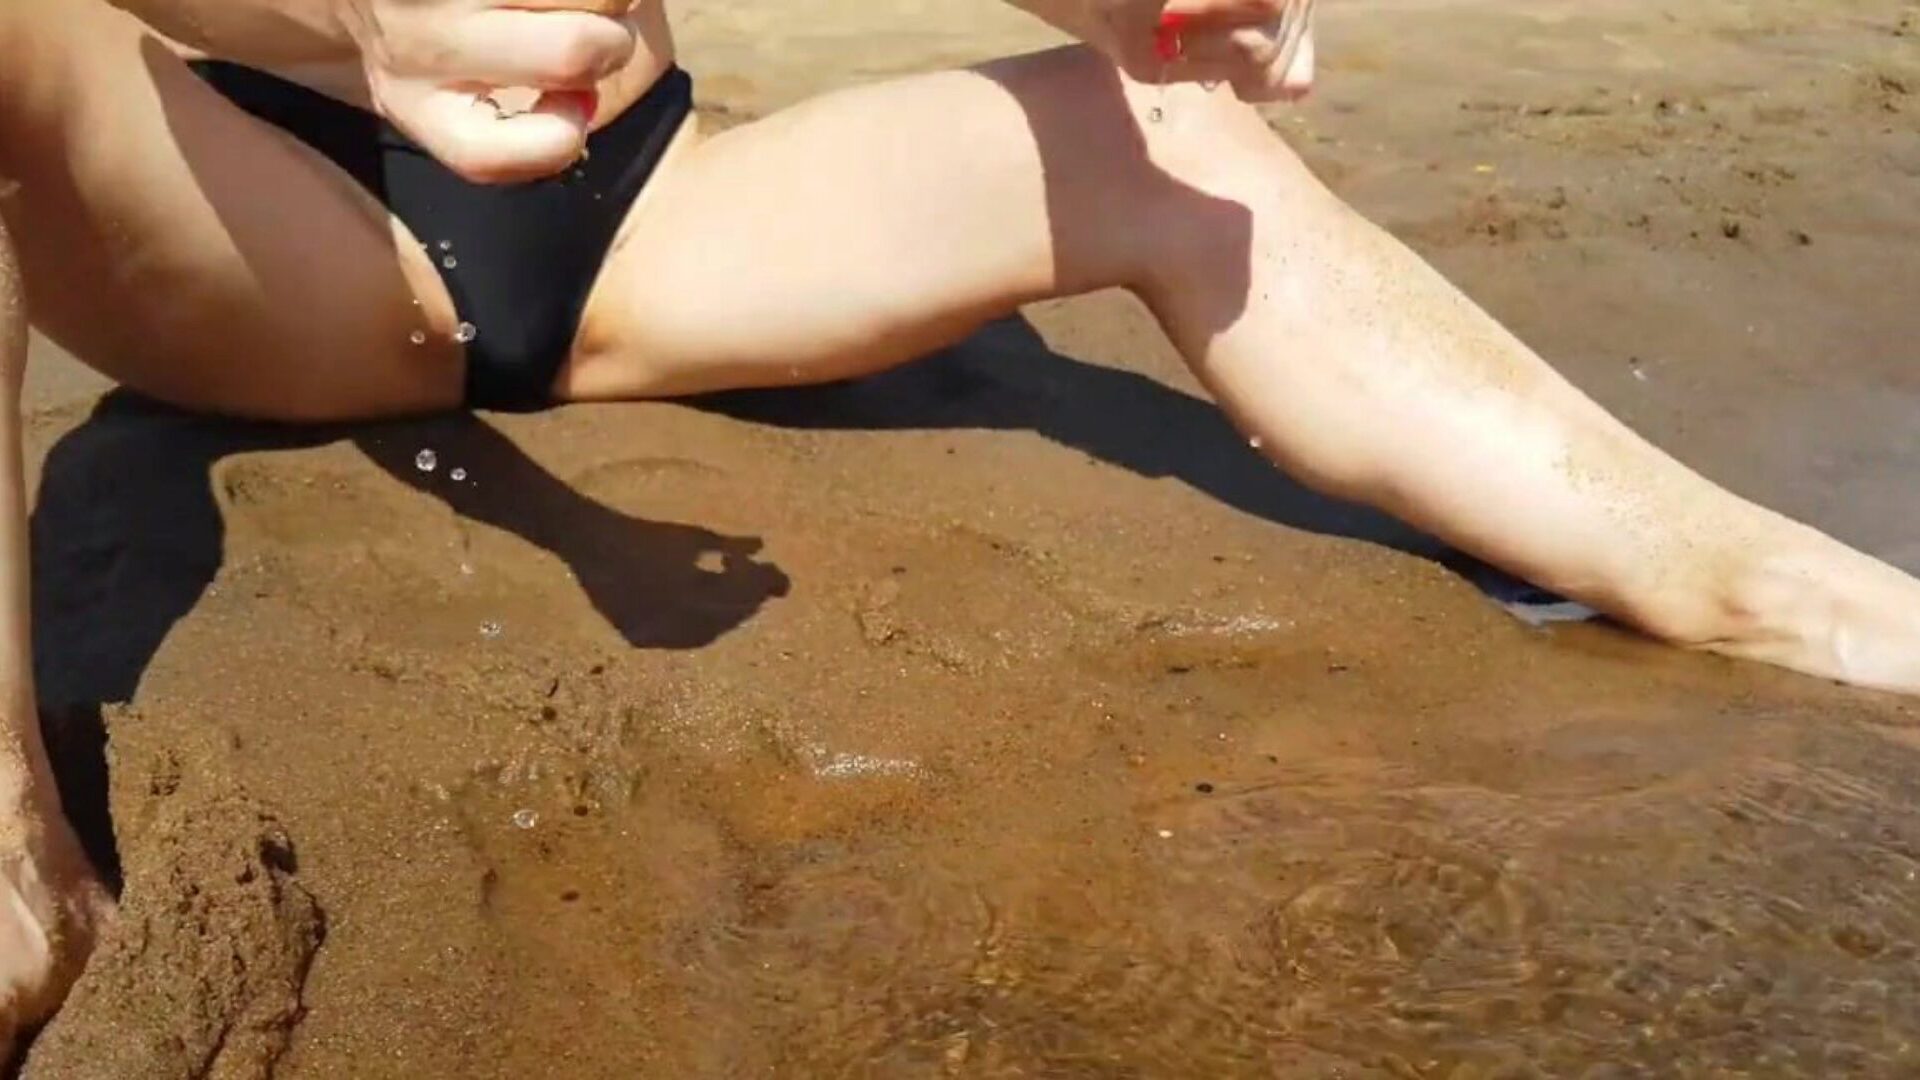 tenåring fingering på en offentlig strand og får en virkelig kul orgasme - stram fitte playskitty ultra hd 4k